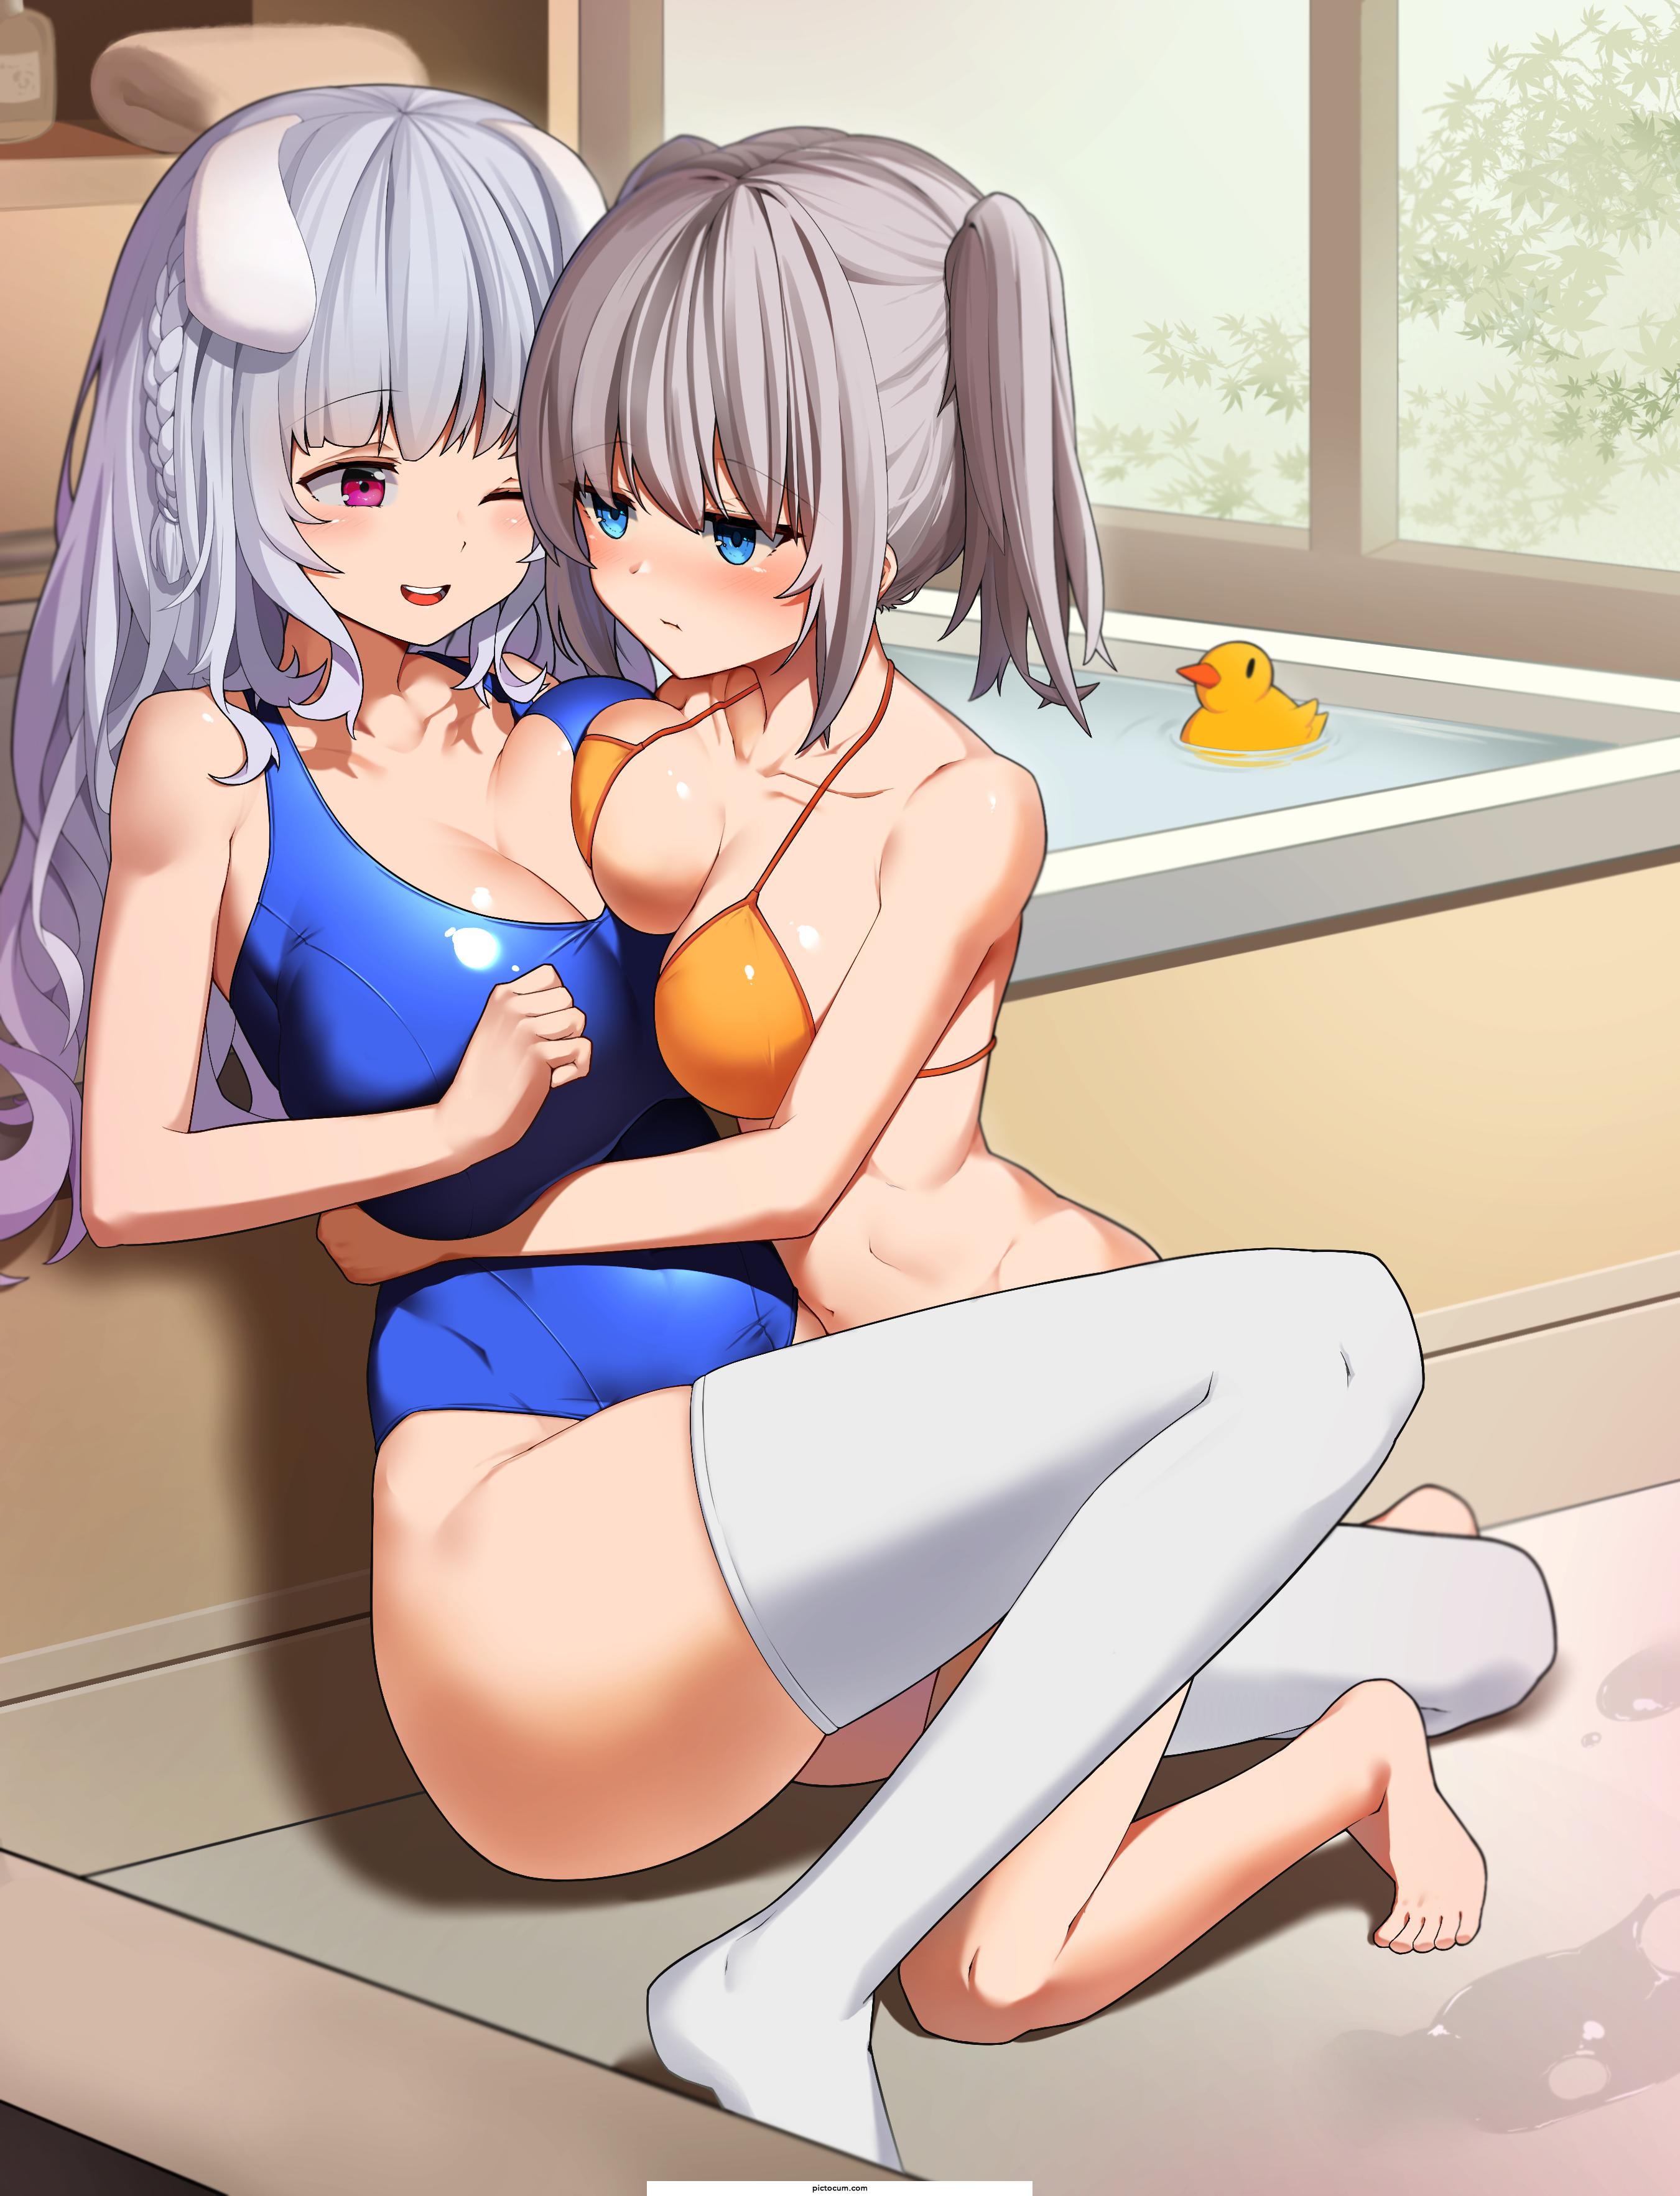 Bathing Together